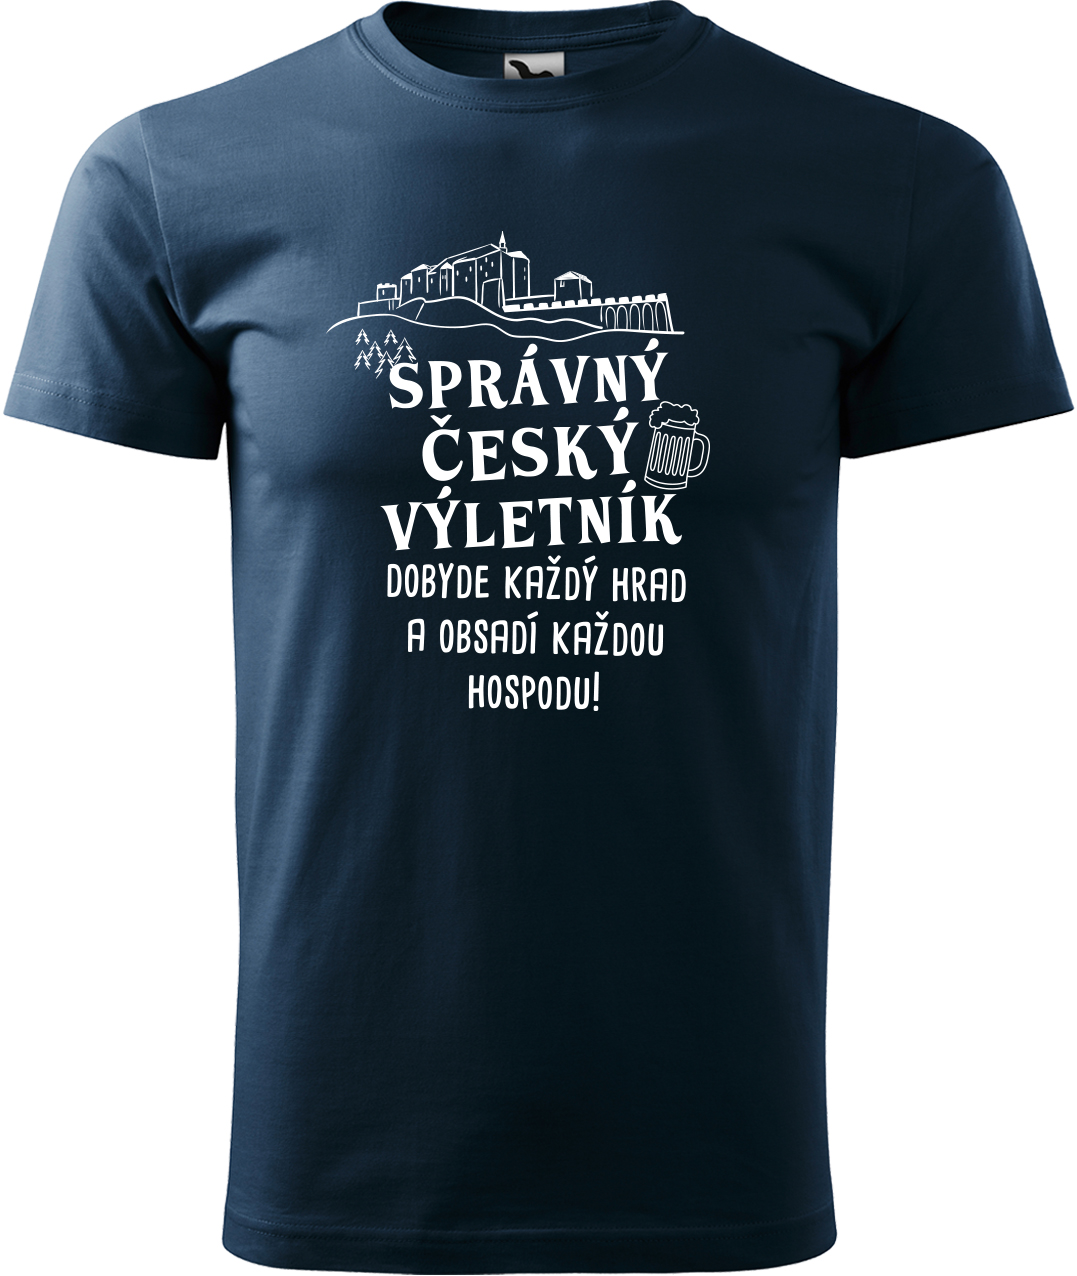 Pánské cestovatelské tričko - Správný český výletník Velikost: L, Barva: Námořní modrá (02), Střih: pánský